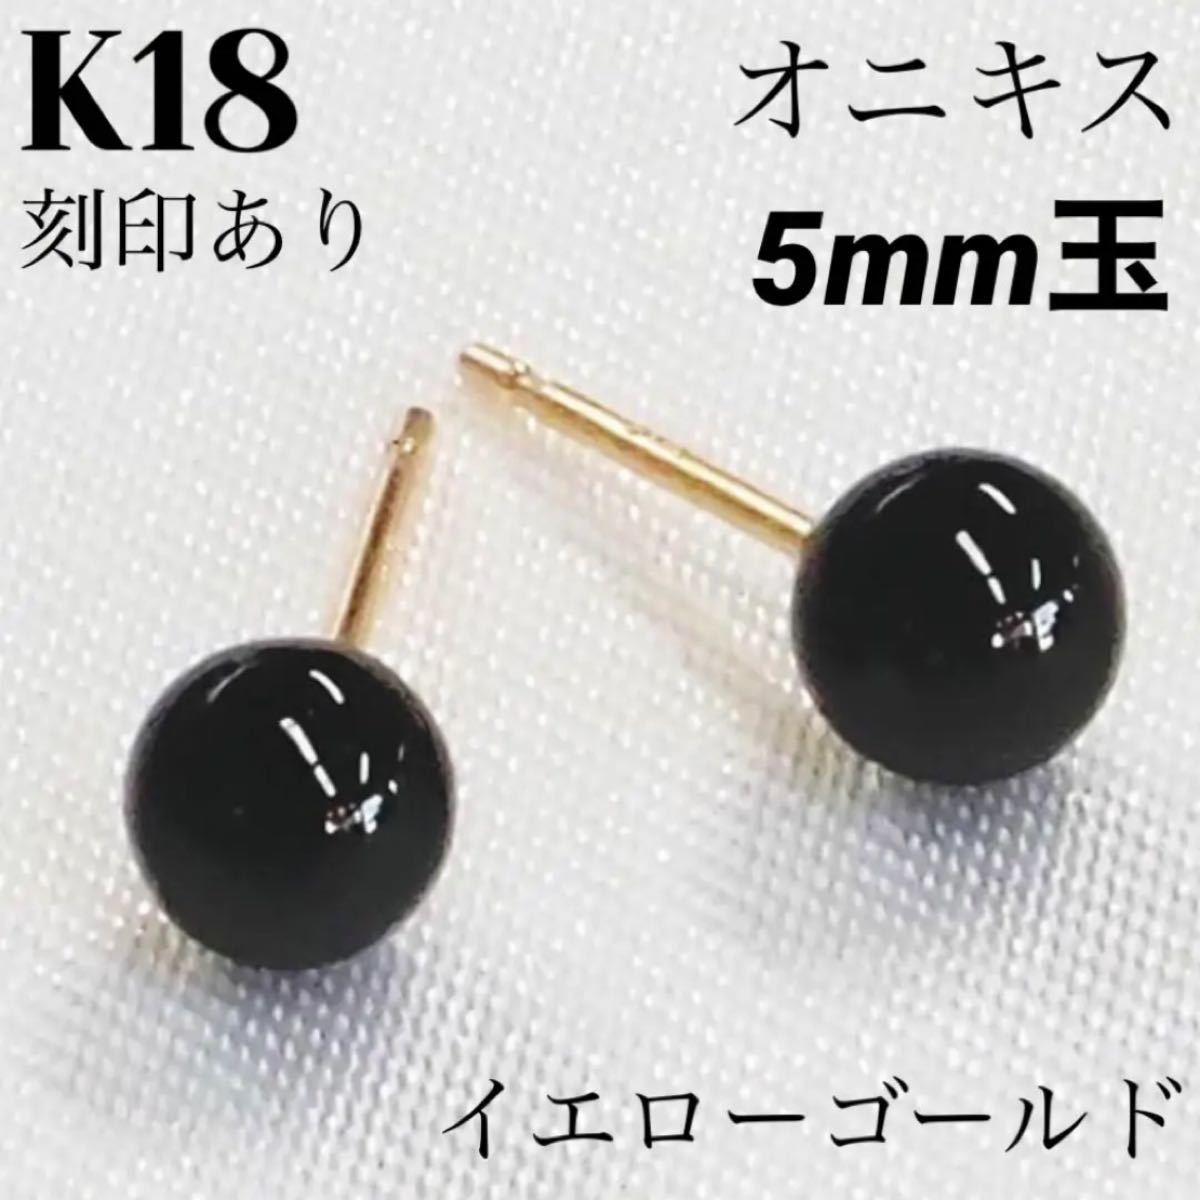 新品 K18 18金 18k ゴールド オニキス 5mm玉 ピアス 上質 日本製 ペア